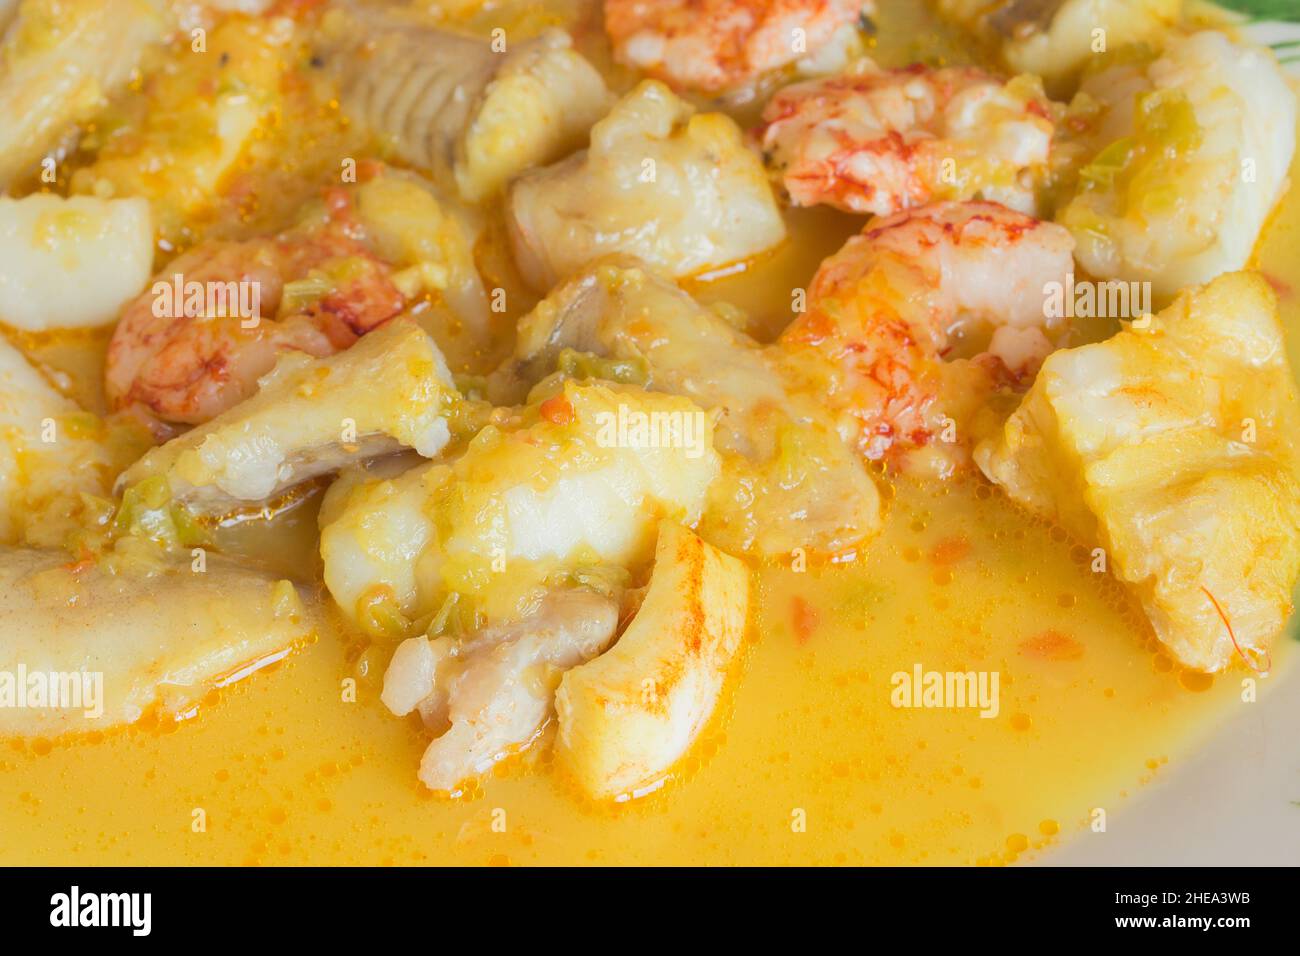 Primo piano di vari ingredienti pesce e frutti di mare nella salsa. Pesce e cibo sano. Foto Stock